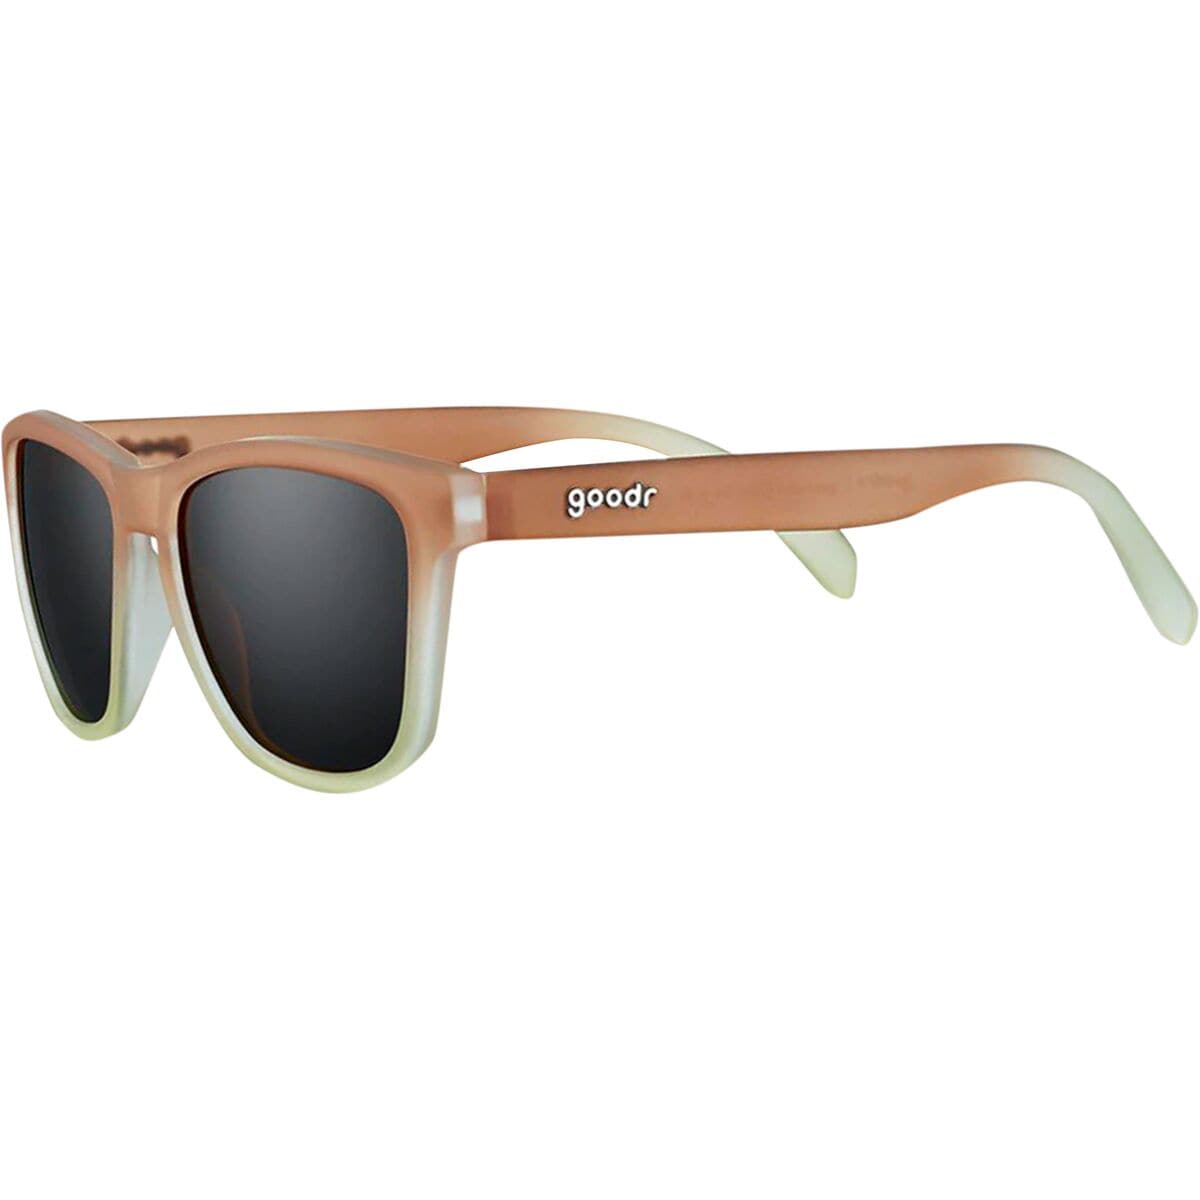 Goodr OG/Golf Polarized Sunglasses - Men's